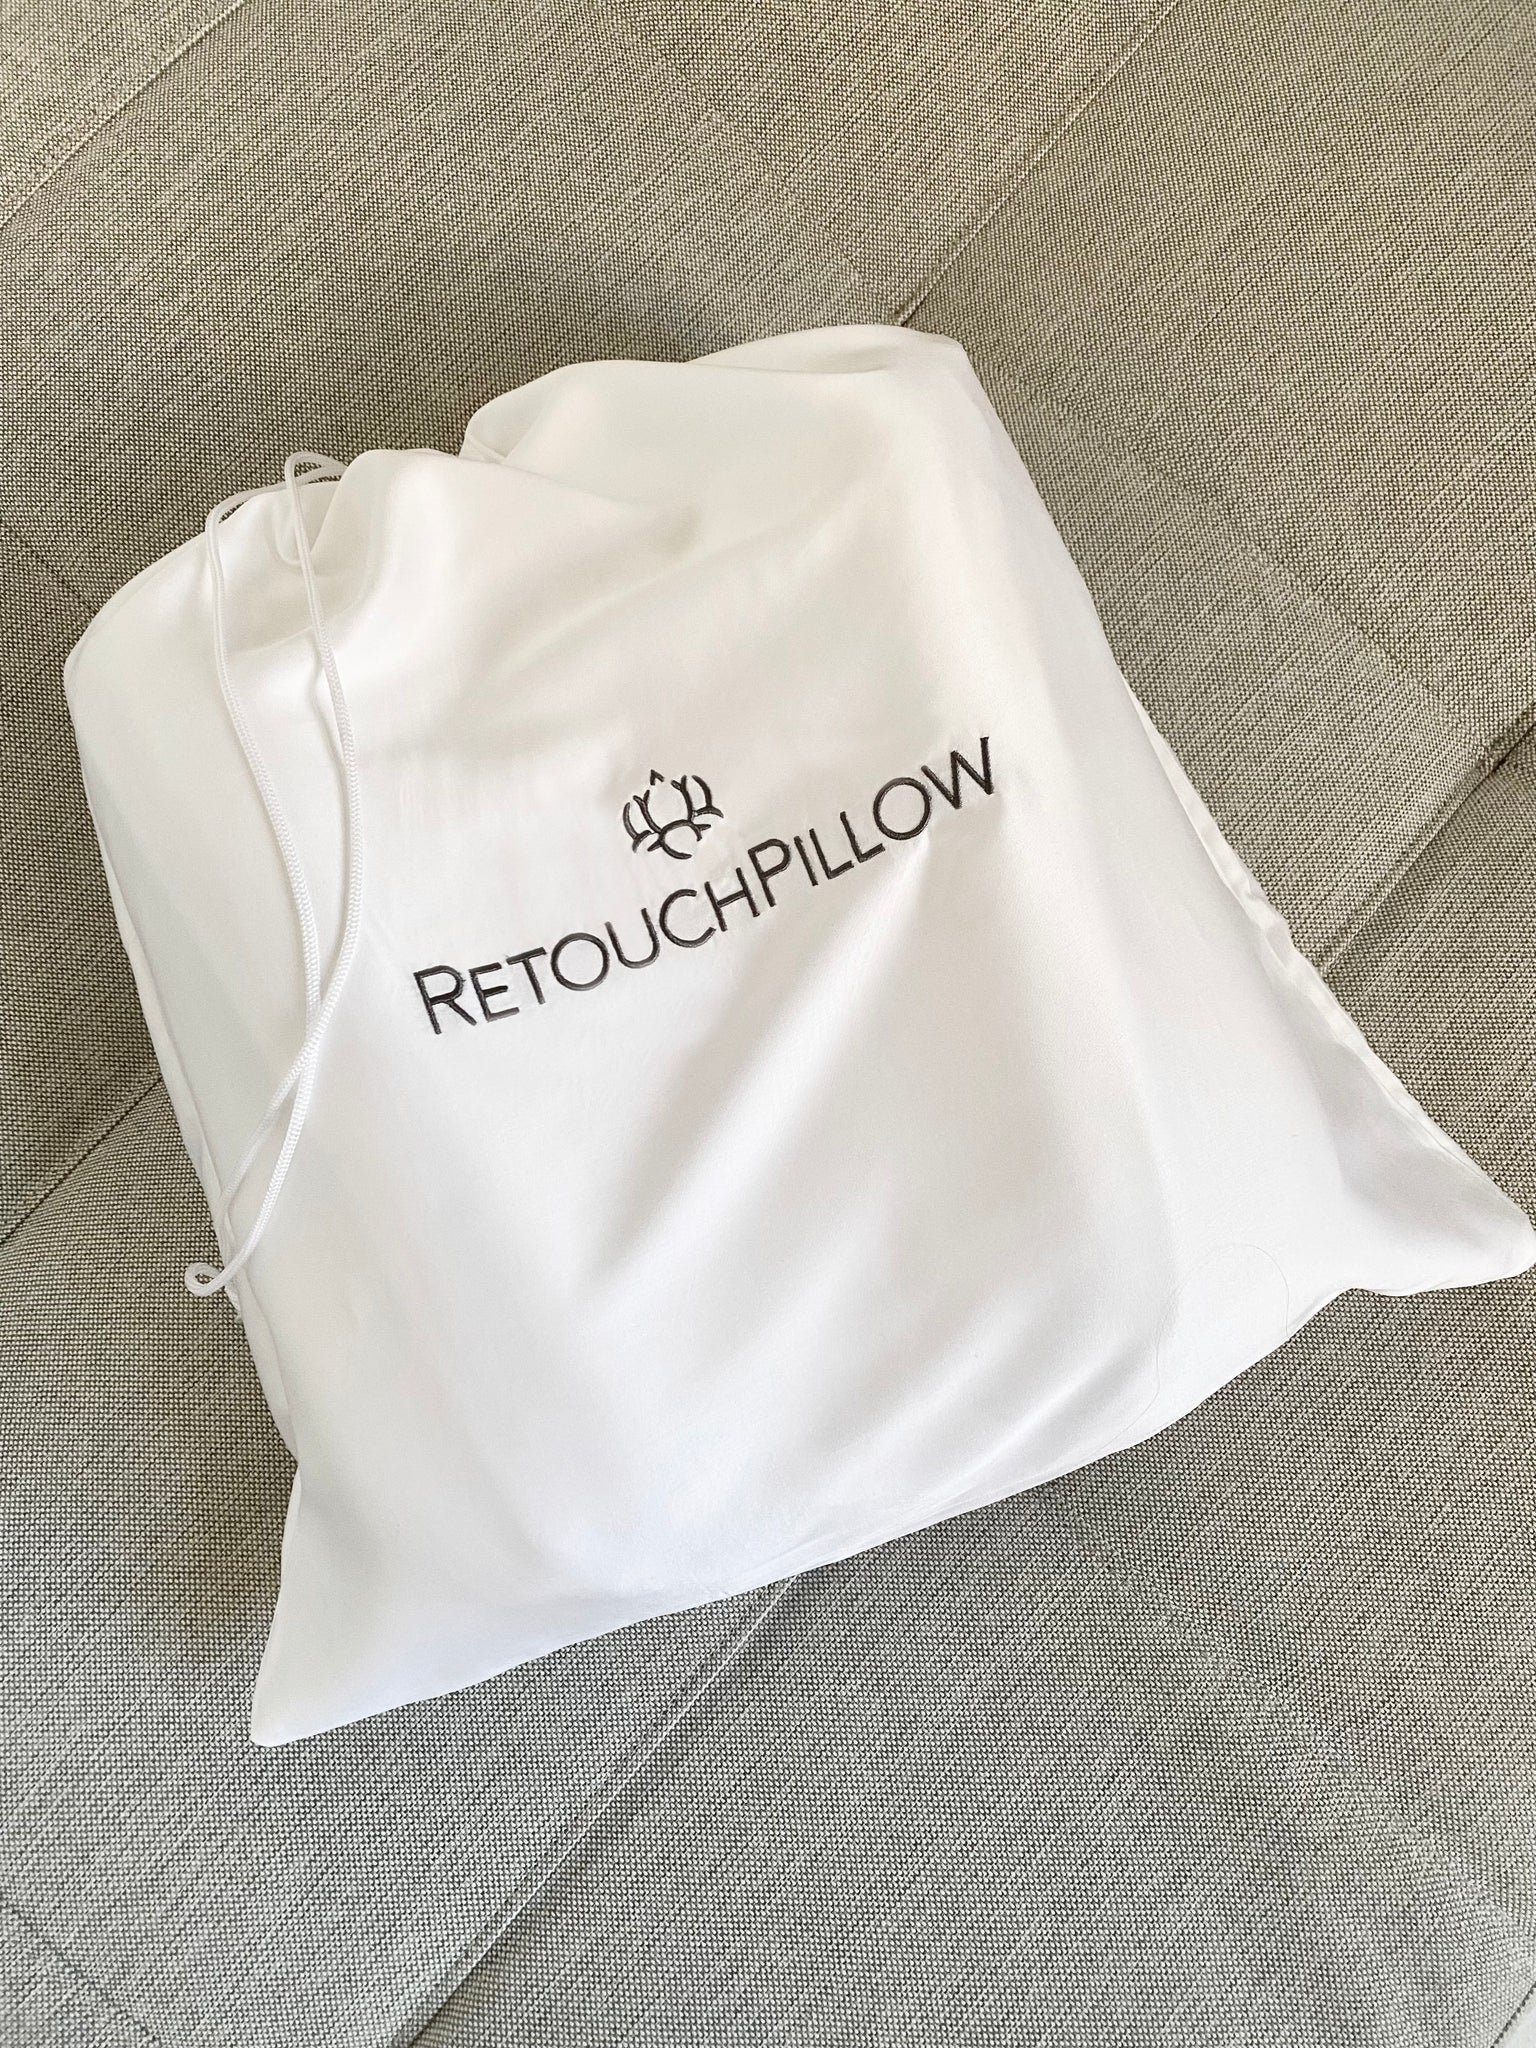 Anti Wrinkle Pillow, RetouchPillow